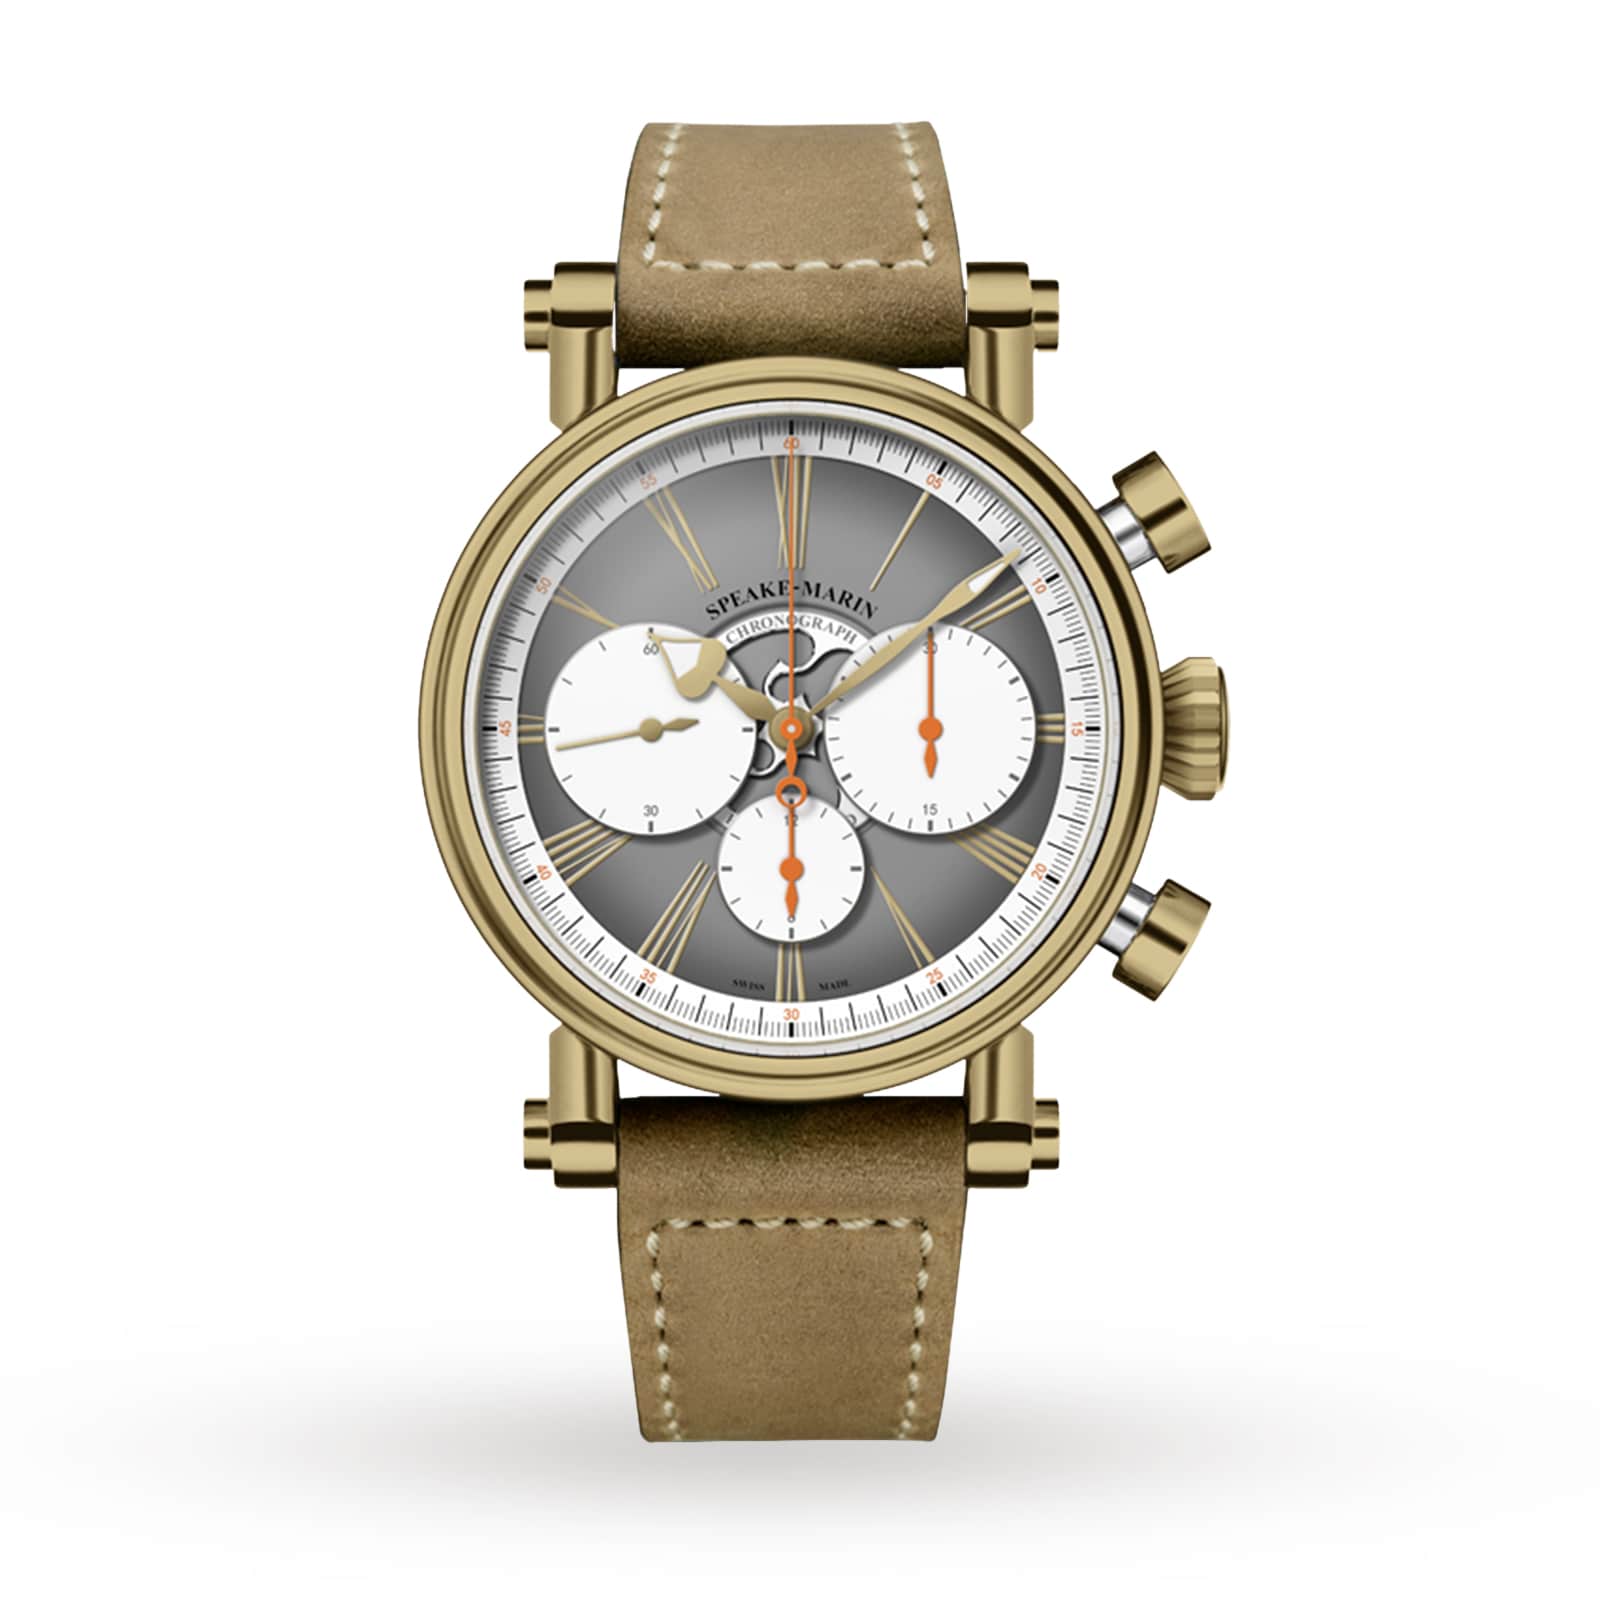 Bronze Horlogerie Haute London Watches Switzerland Of 42mm 594208060 Speake-Marin | Chronograph US